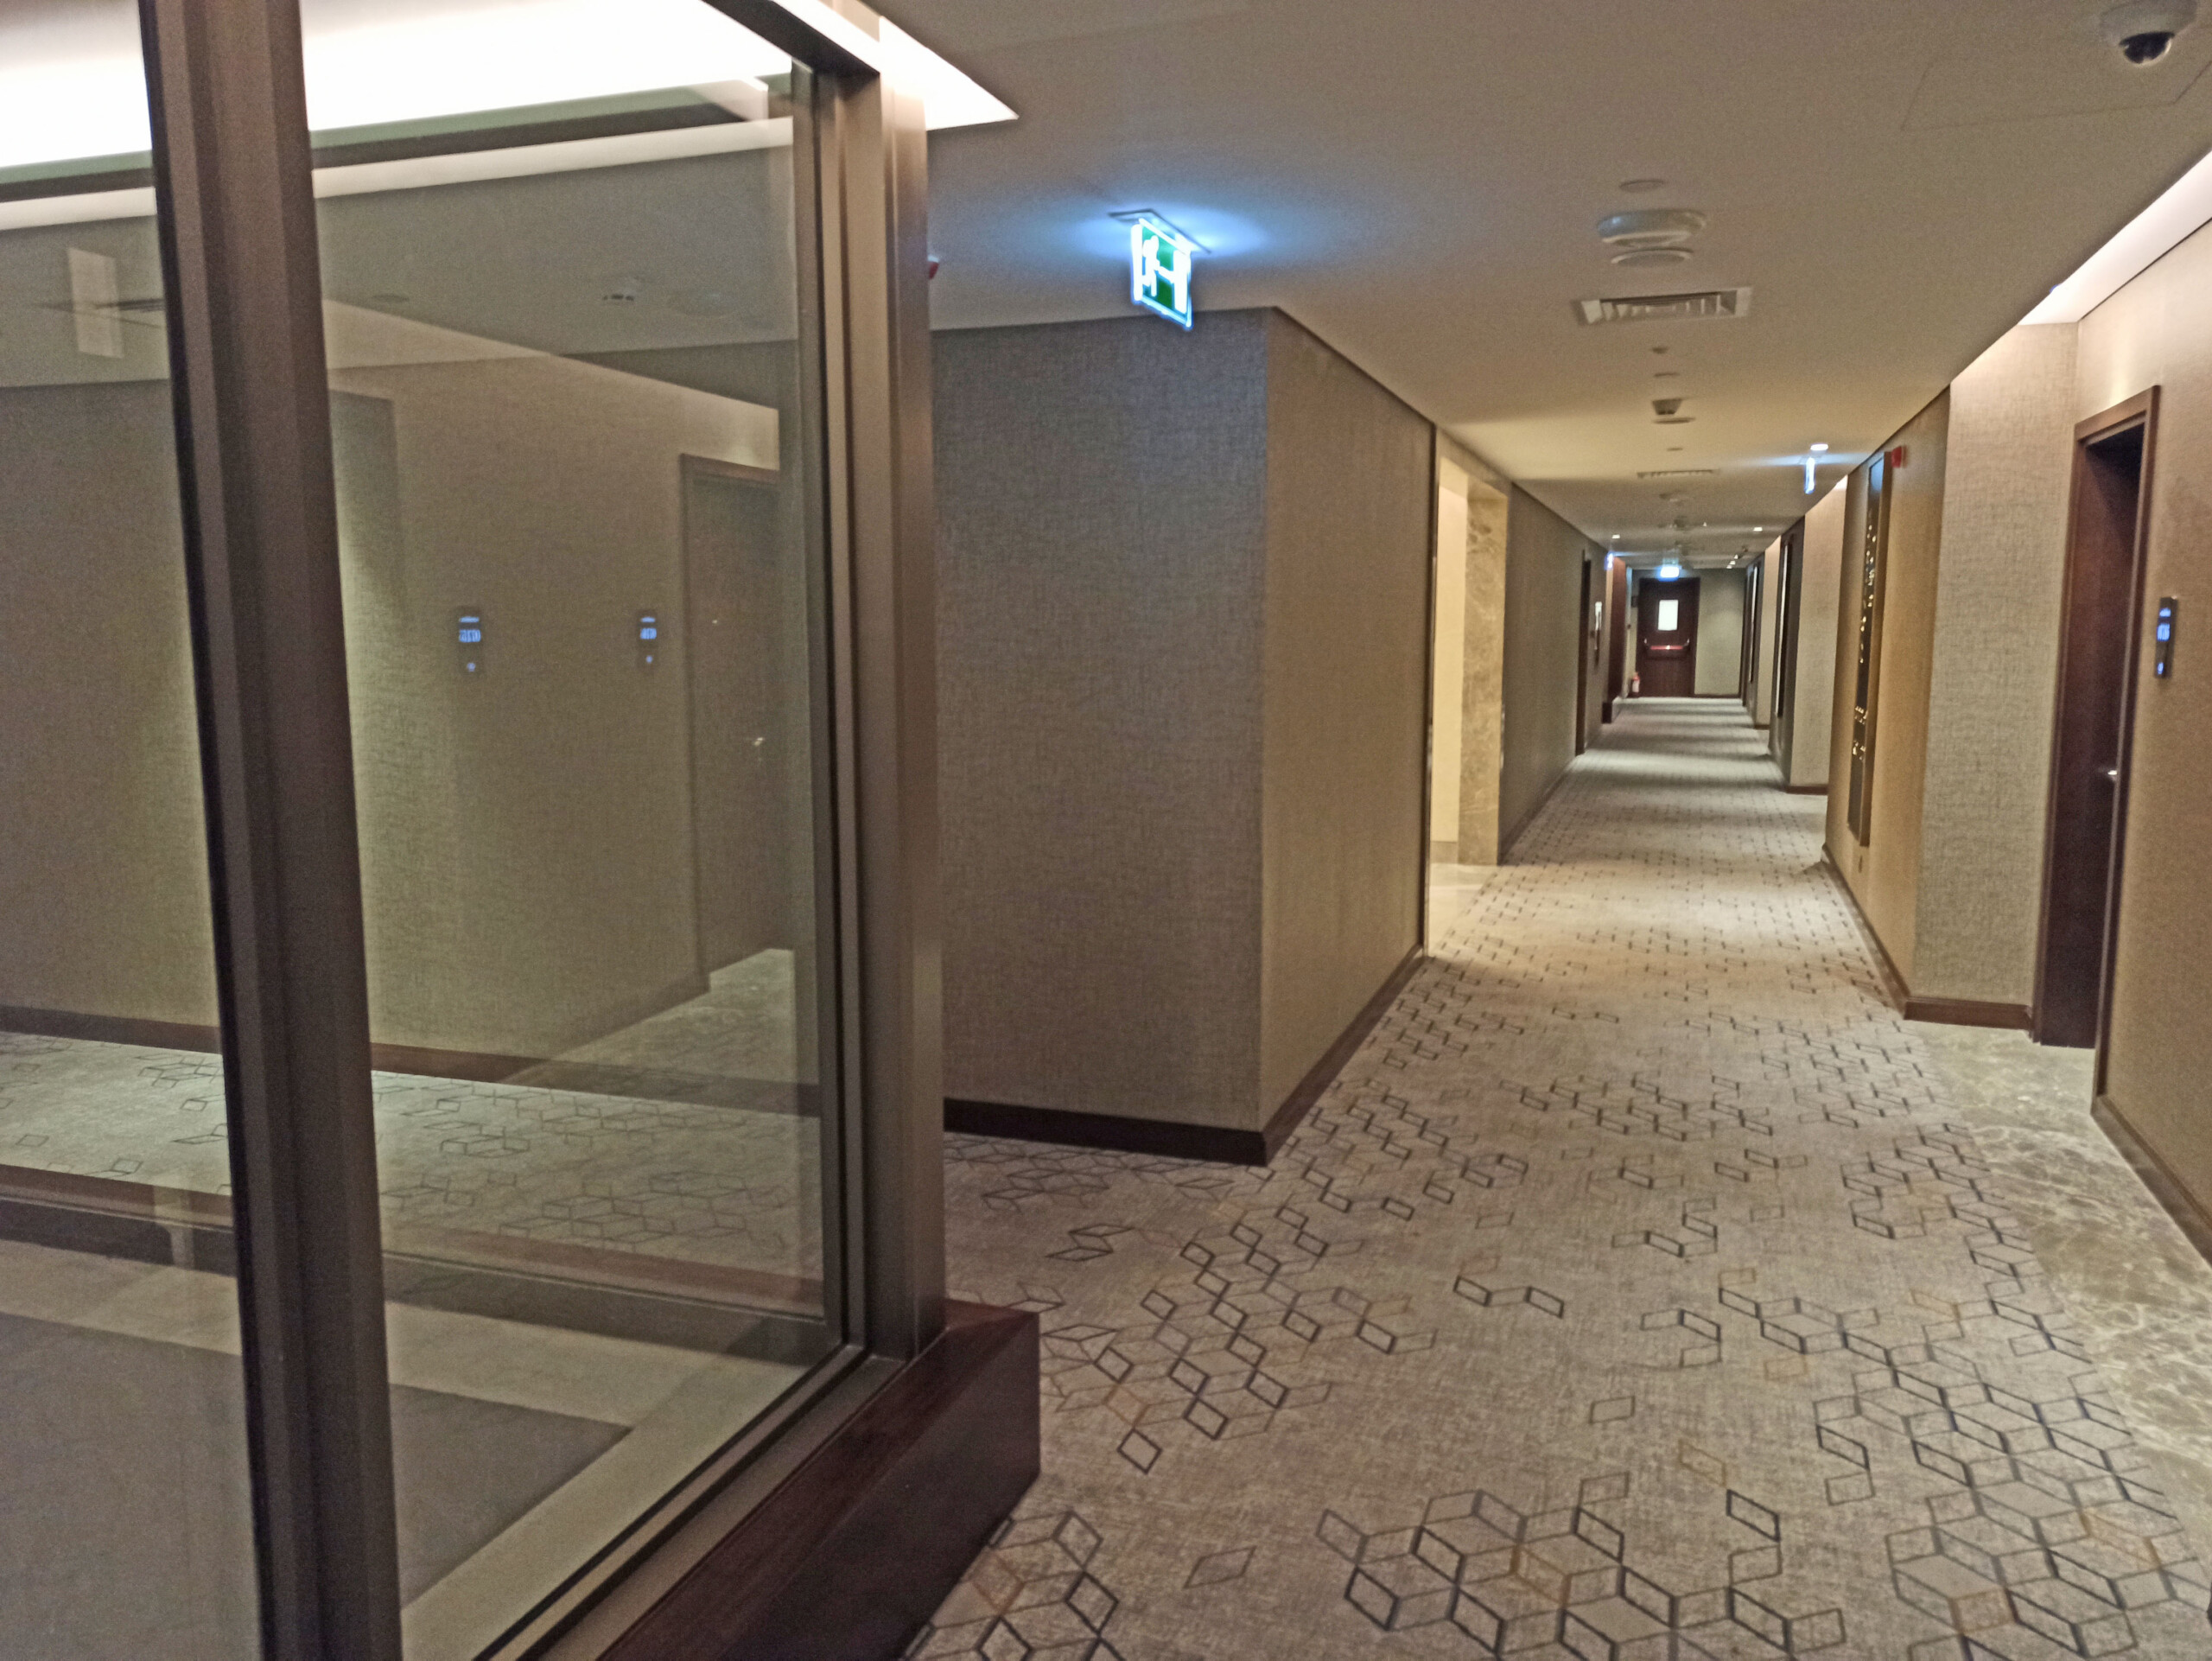 7th Floor Guest Room Hallway (1)